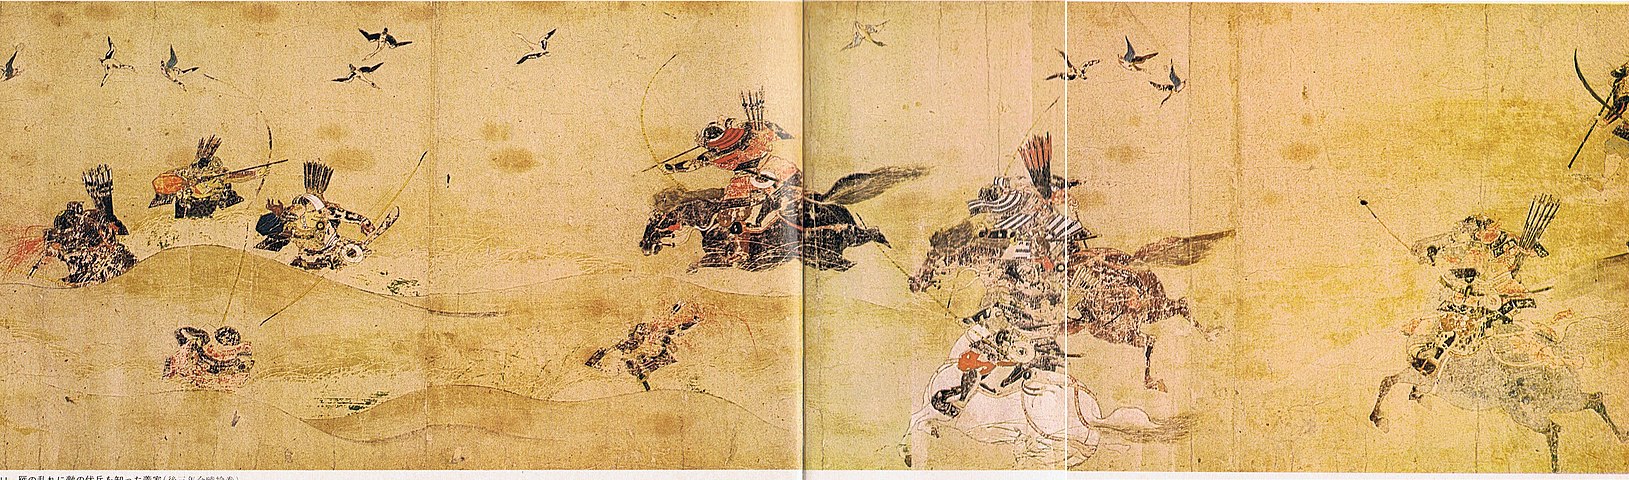 Heian легенды re written. Самураи эпохи Хэйан. Эпоха Хэйан (794 --1185). Период Хэйан (794-1185 гг.). Япония периода Хэйан (794-1185).